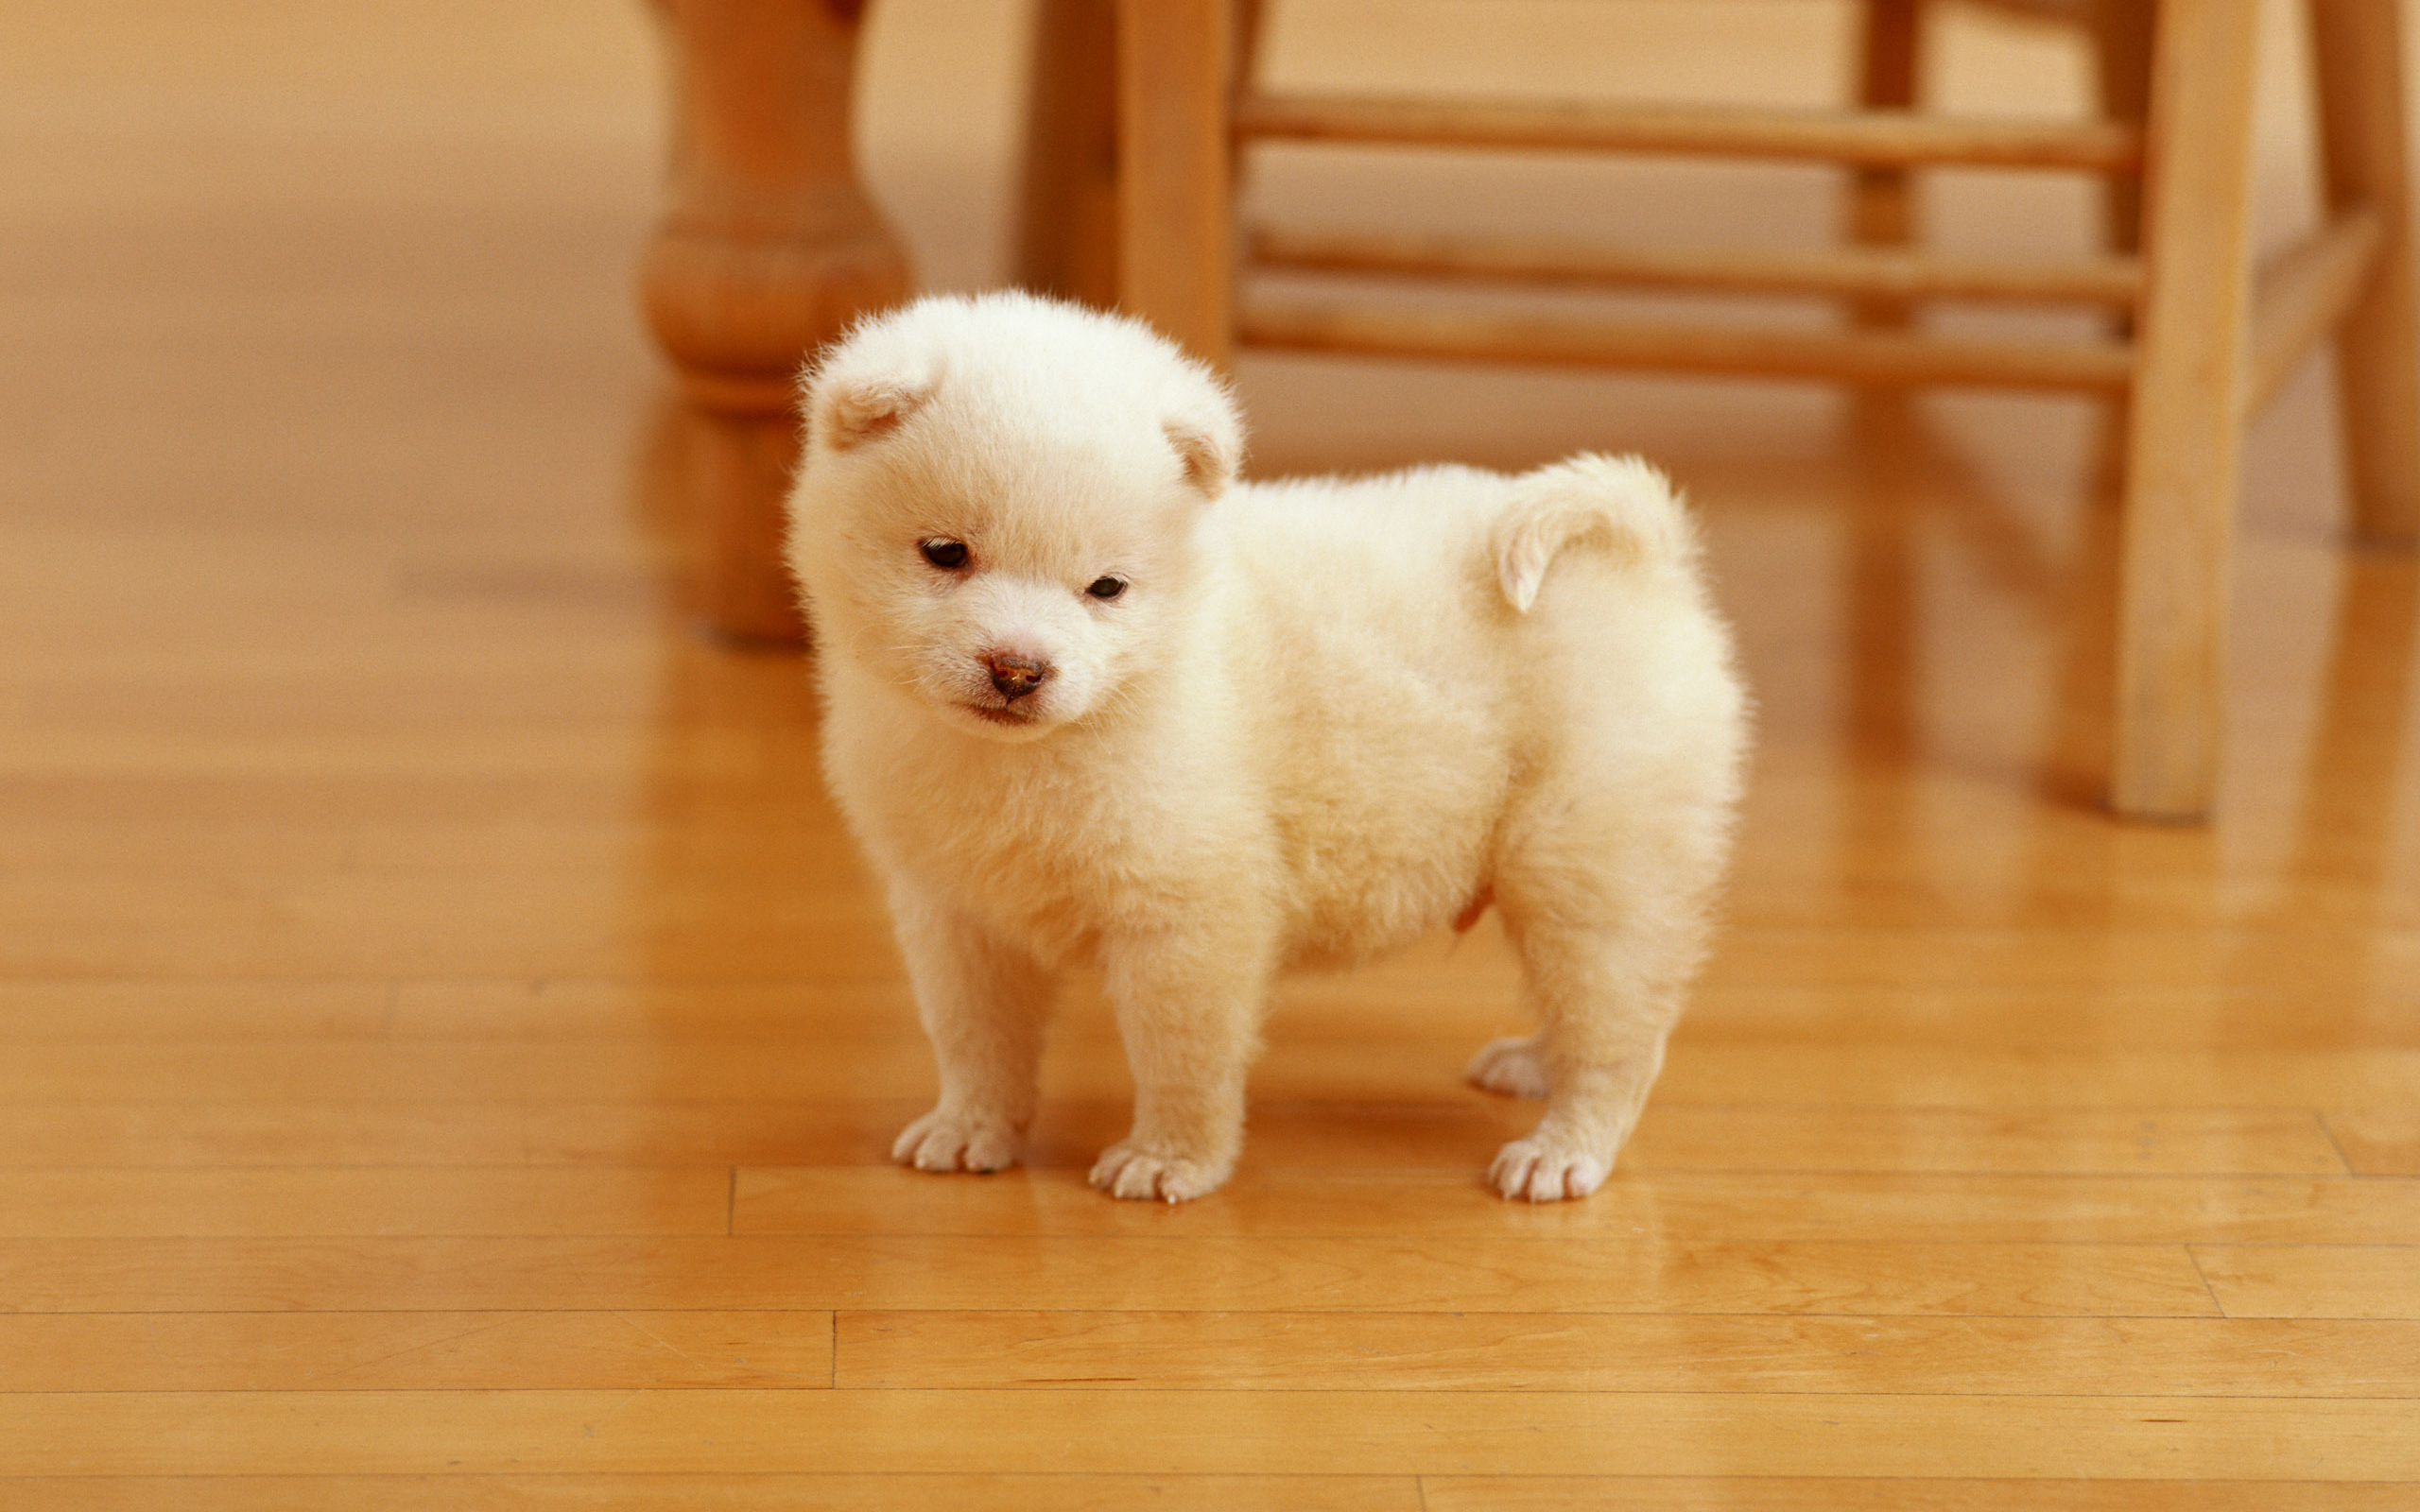 Cutest Puppy121942602 - Cutest Puppy - Tern, Puppy, Cutest